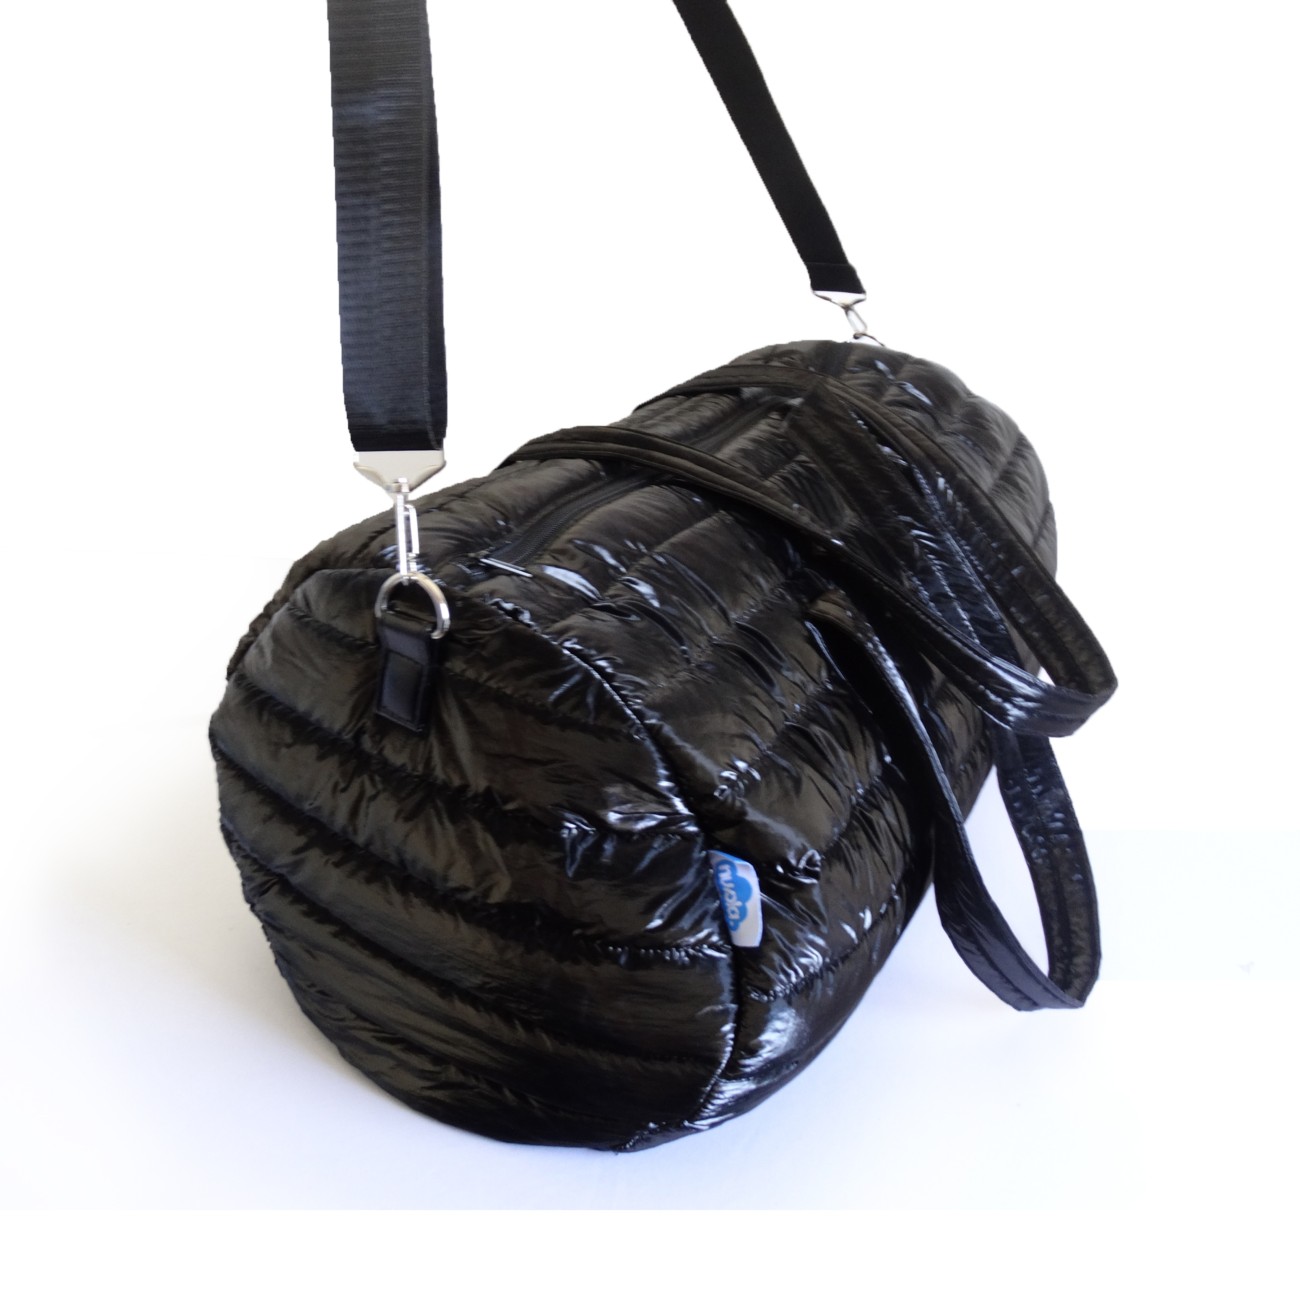 Travel bag Apolo Black 3